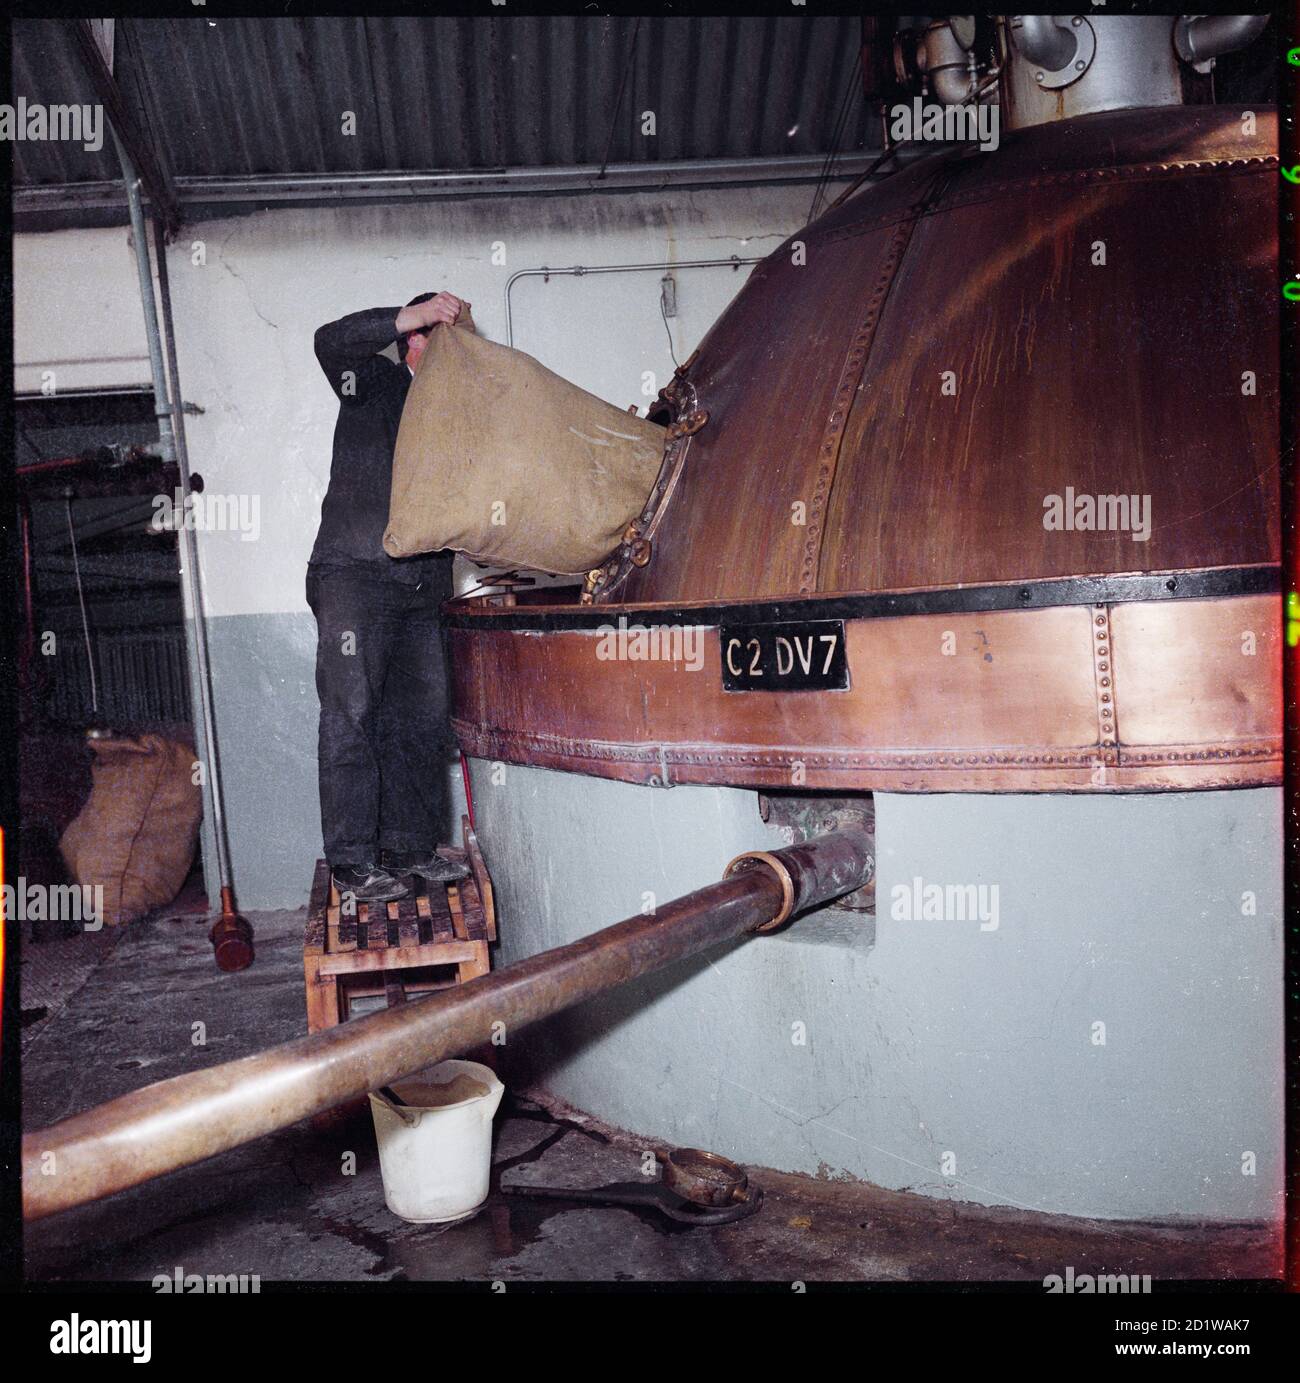 McMullen's Brewery, Hartham Lane, Hertford, Hertfordshire. Il luppolo viene aggiunto a un bollitore di rame bollente (bollitore di estrazione) presso la fabbrica di birra McMullen's Hertford. Foto Stock